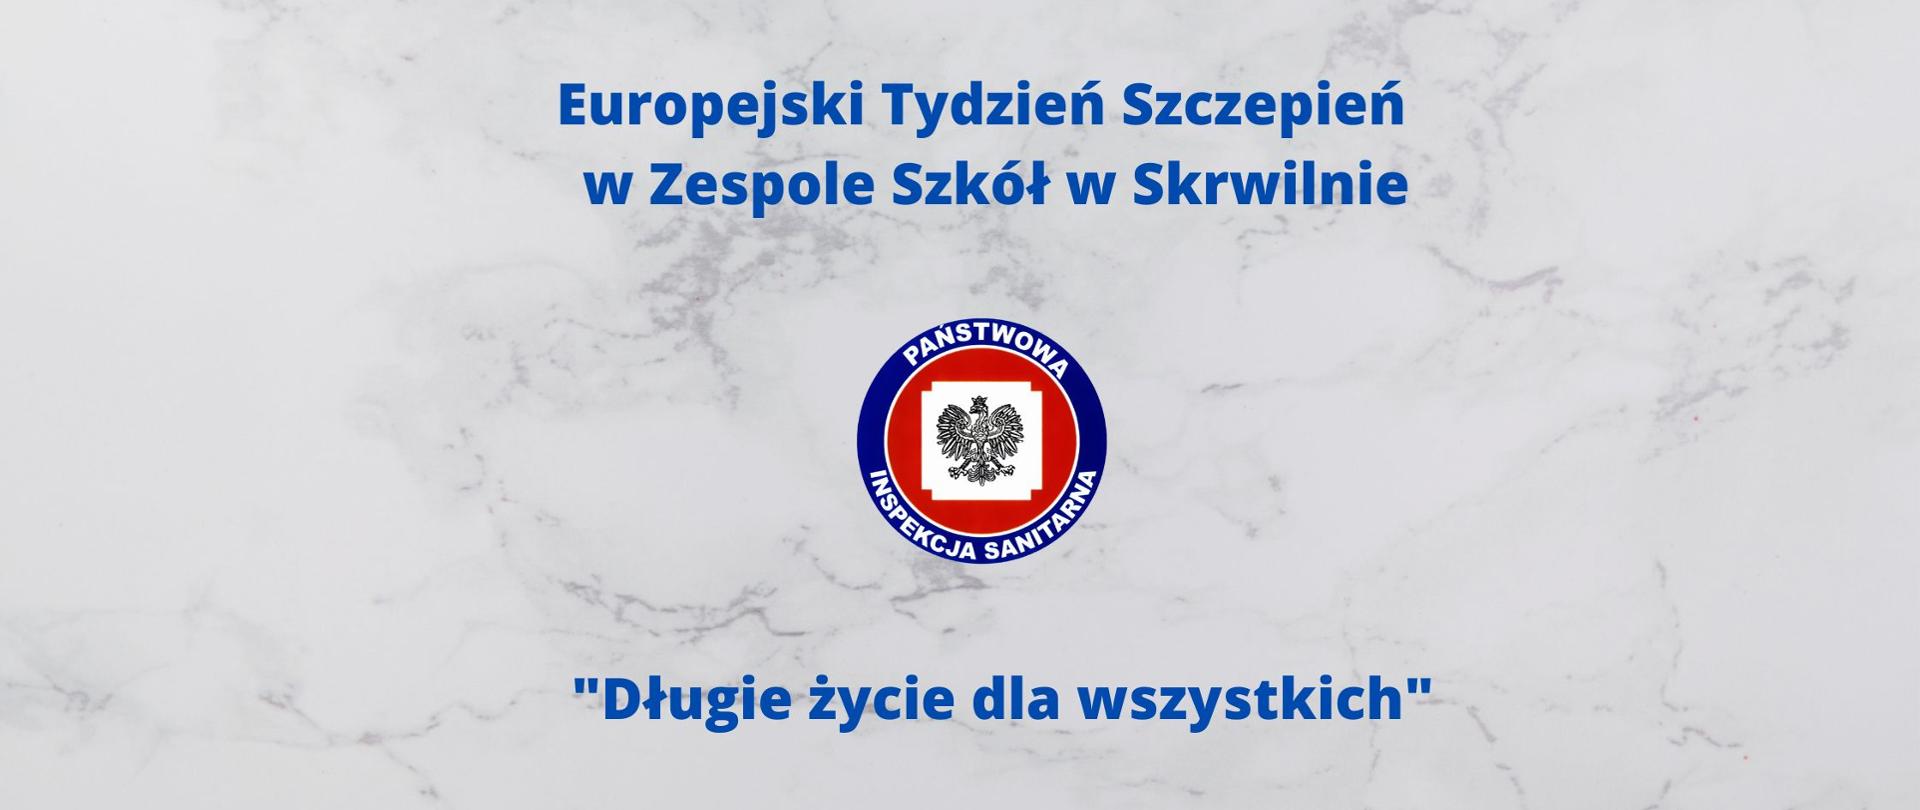 Europejski_Tydzień_Szczepień